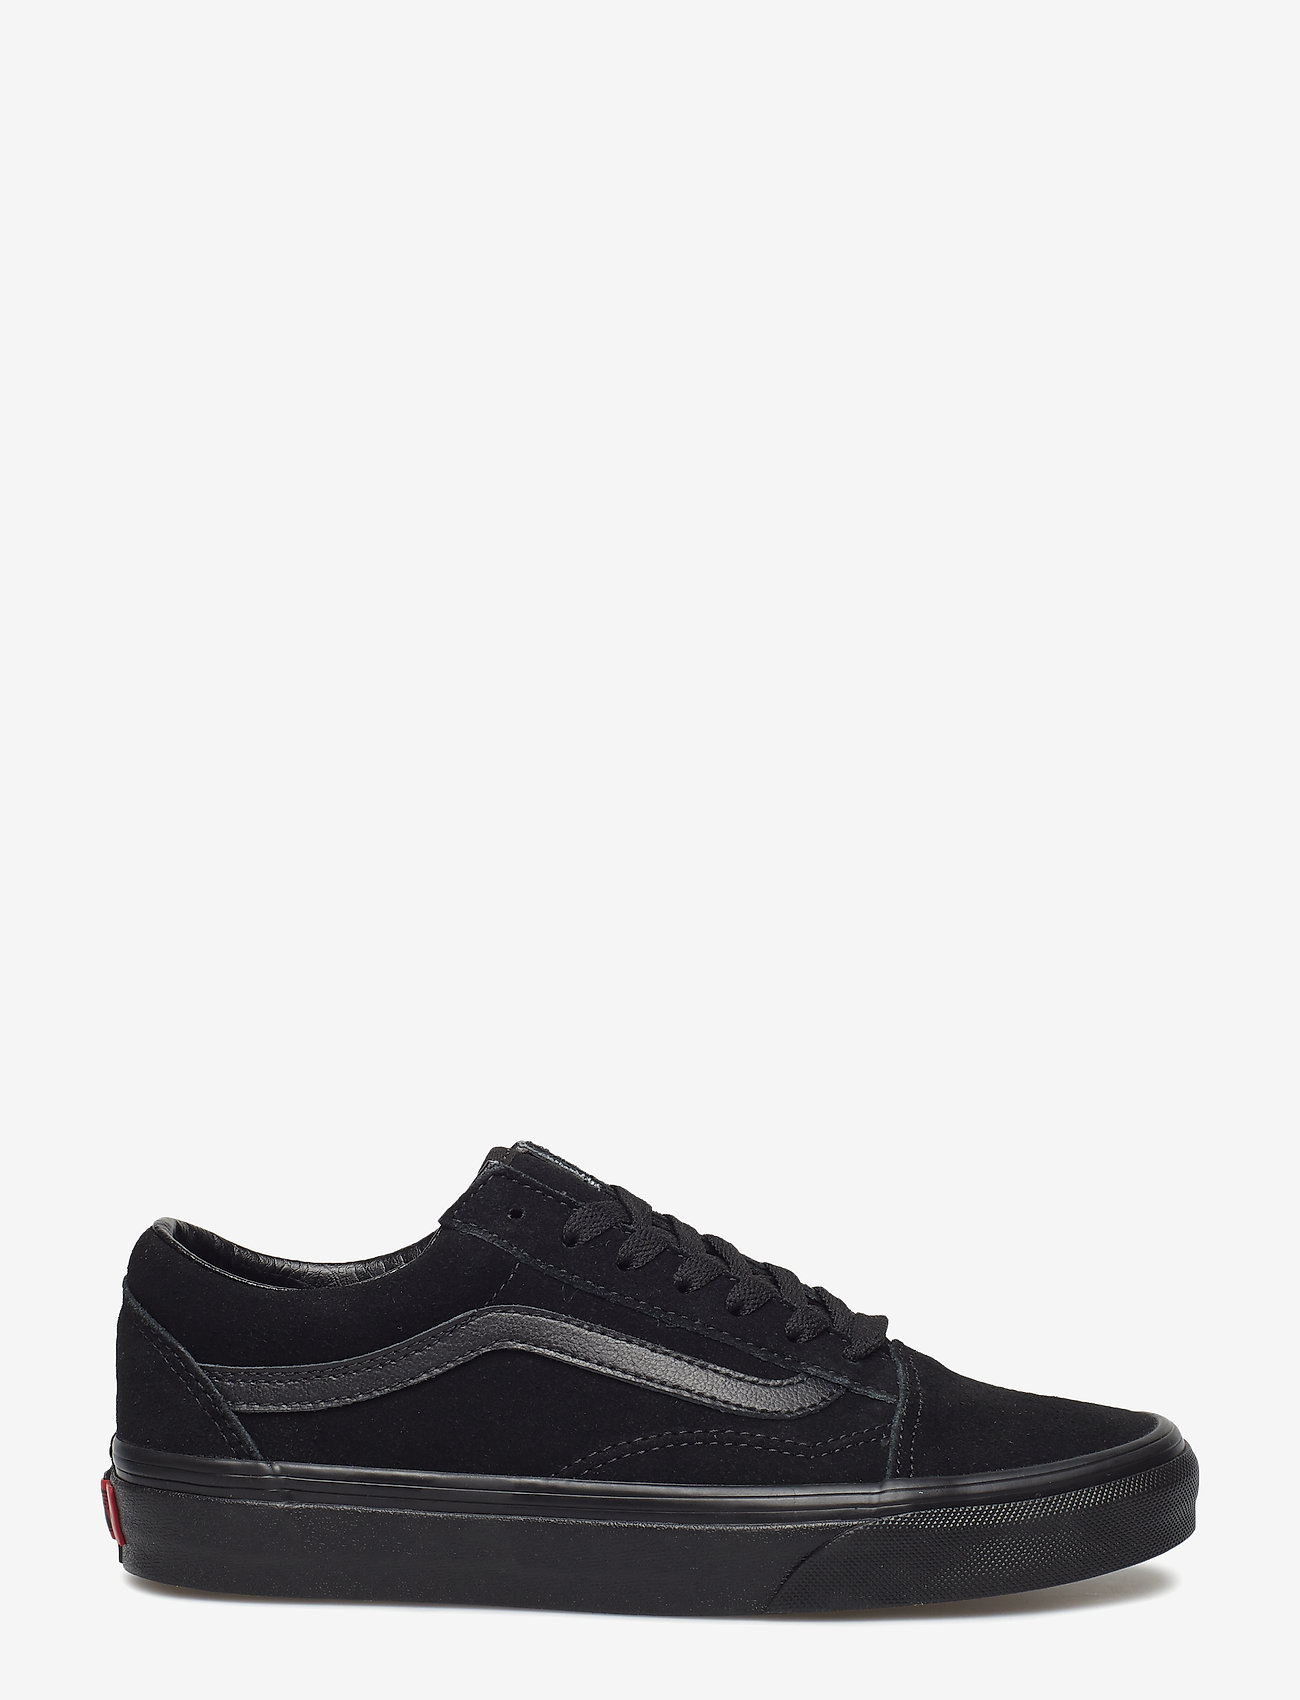 VANS - UA Old Skool - low top sneakers - black/black - 1